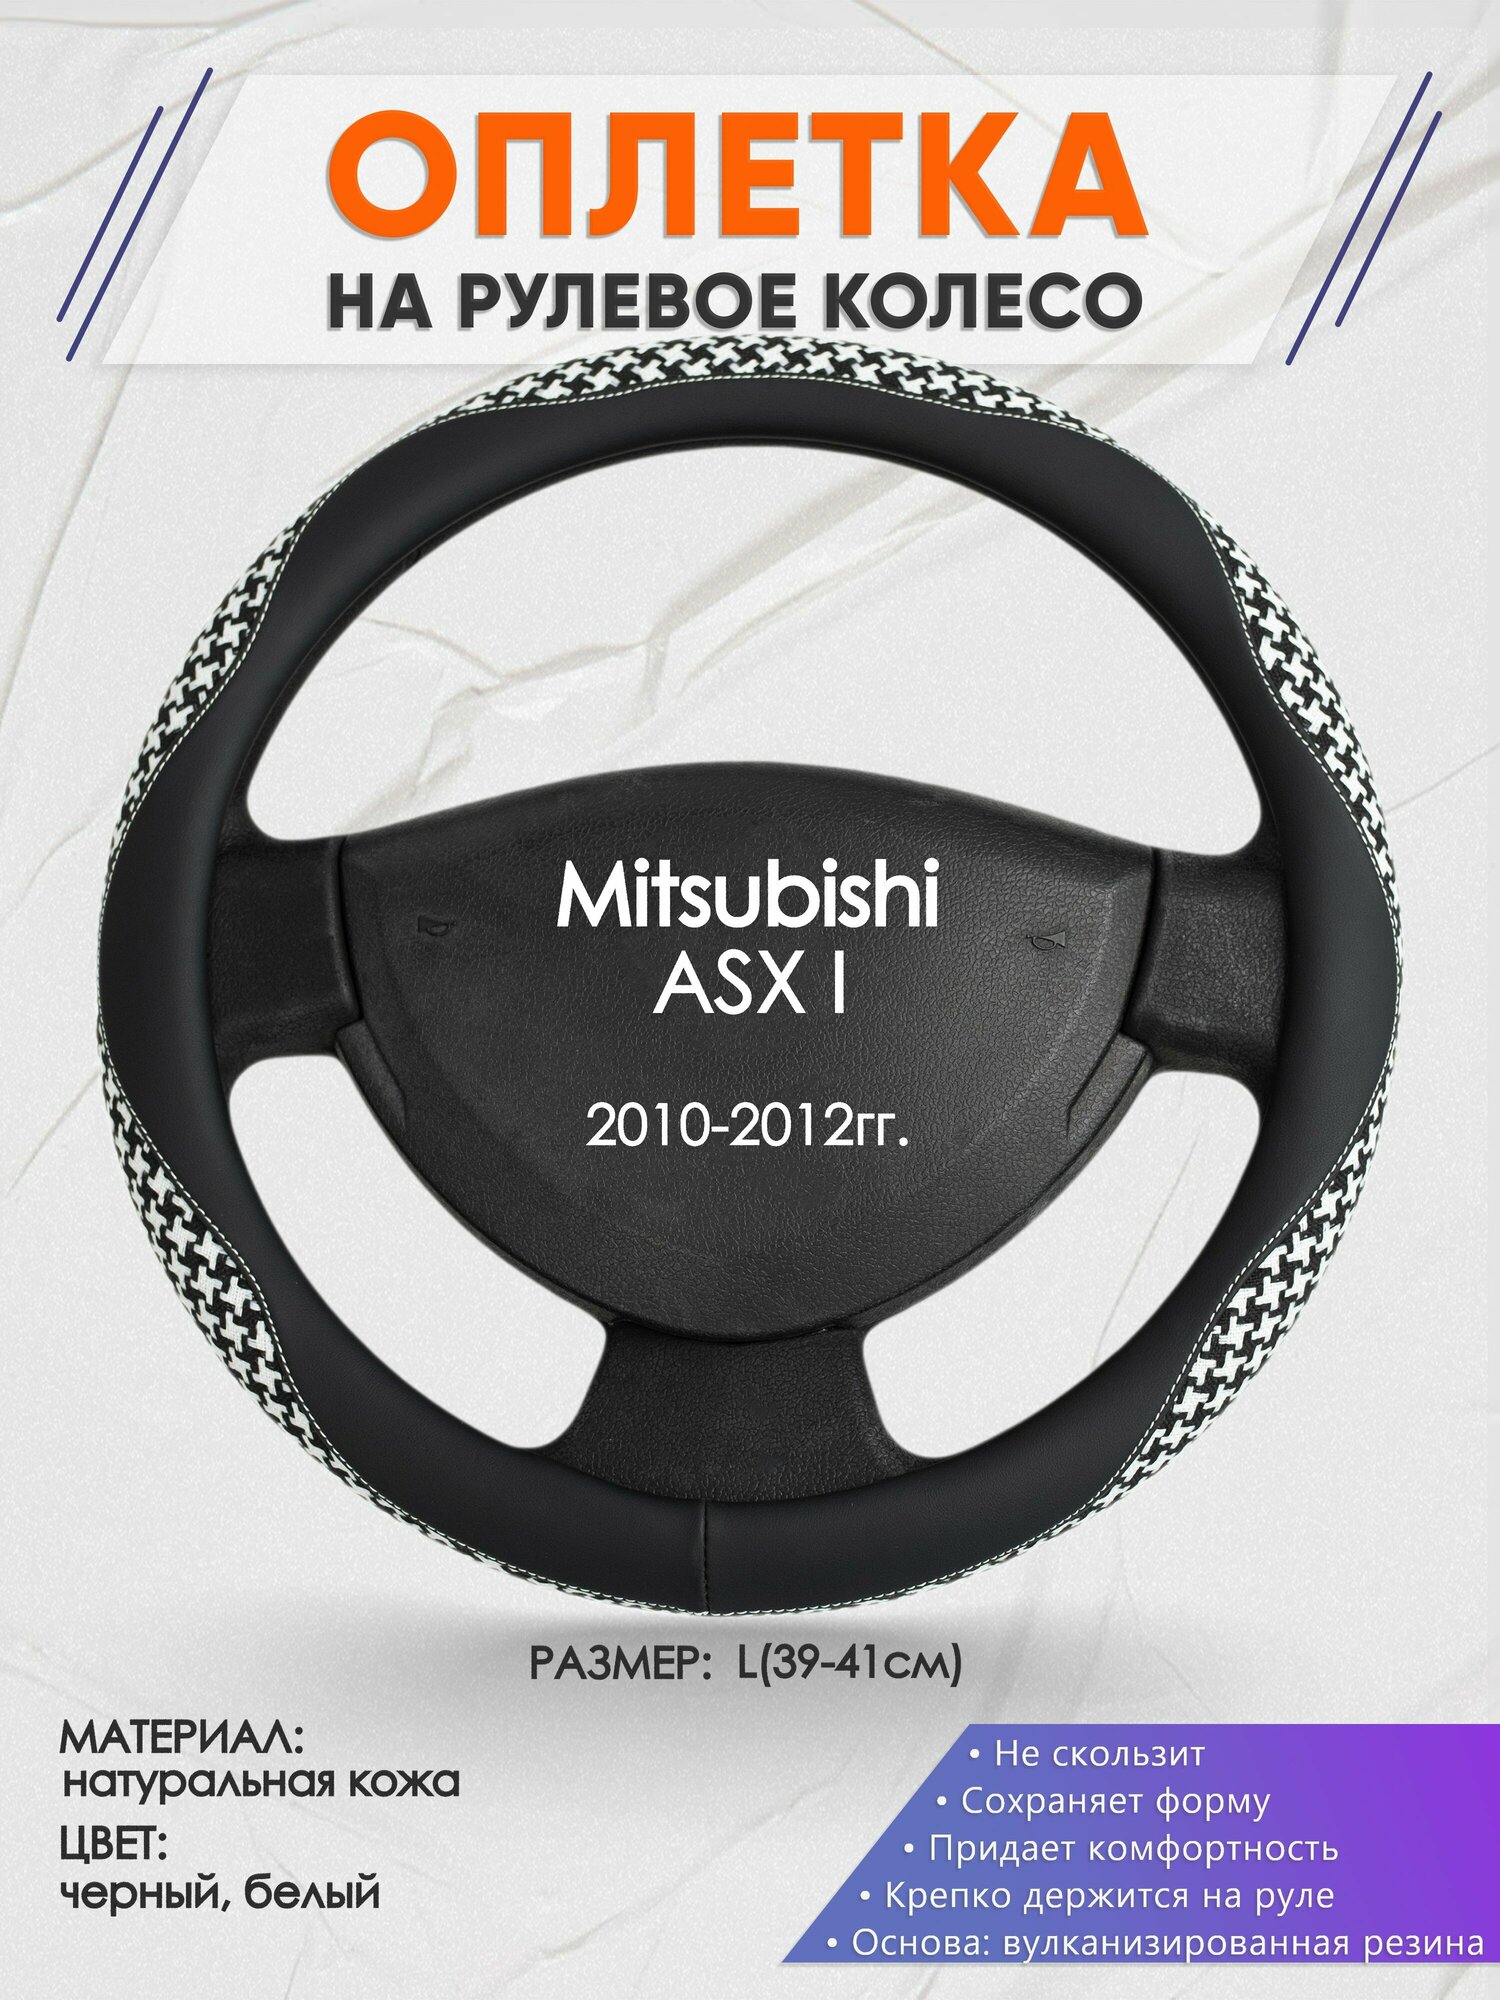 Оплетка на руль для Mitsubishi ASX I(Митсубиси АСХ) 2010-2012, L(39-41см), Натуральная кожа 21